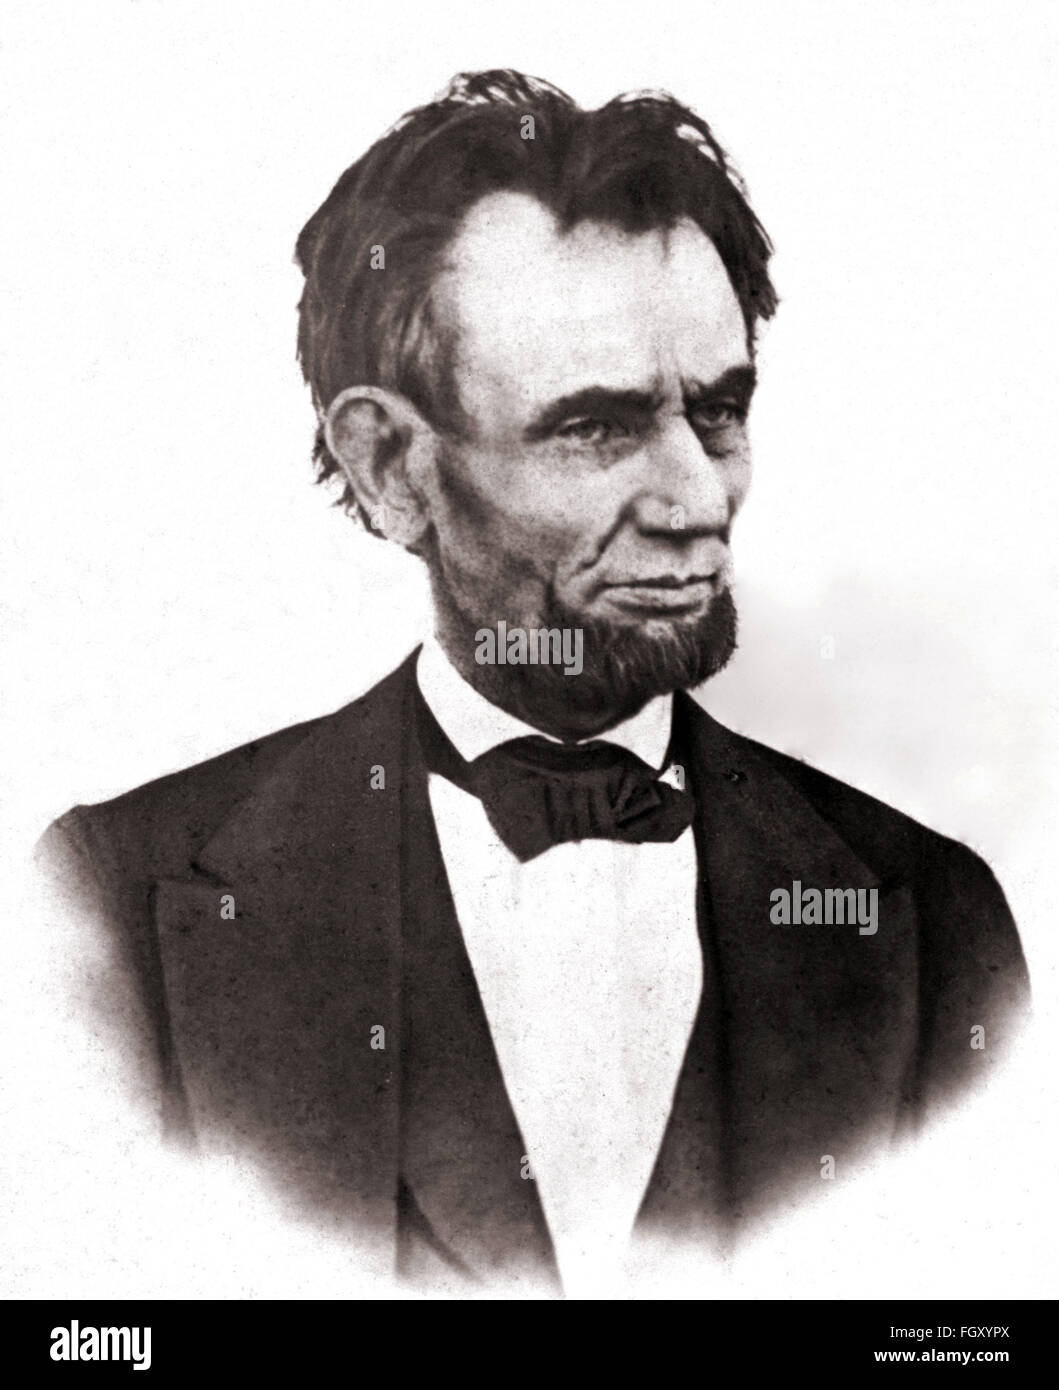 Retrato fotográfico del Presidente de los Estados Unidos Abraham Lincoln en 1865. Foto de stock